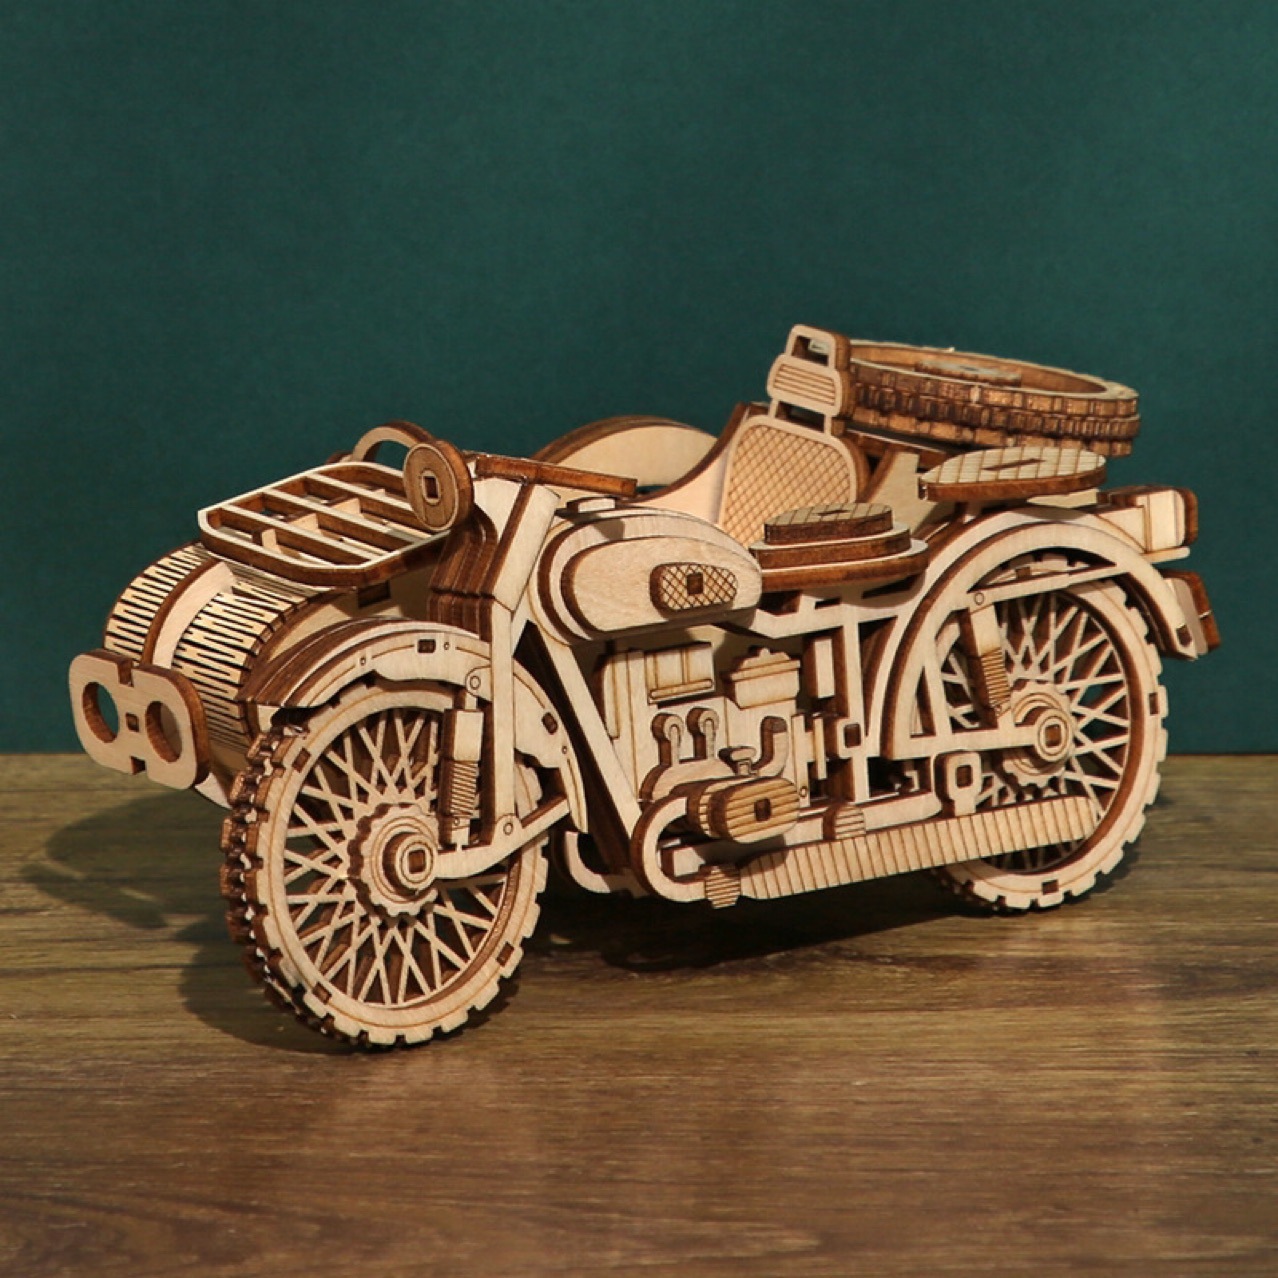 木制卡车油罐车摩托车拼图手工DIY 3D木质立体拼图创意玩具外贸男